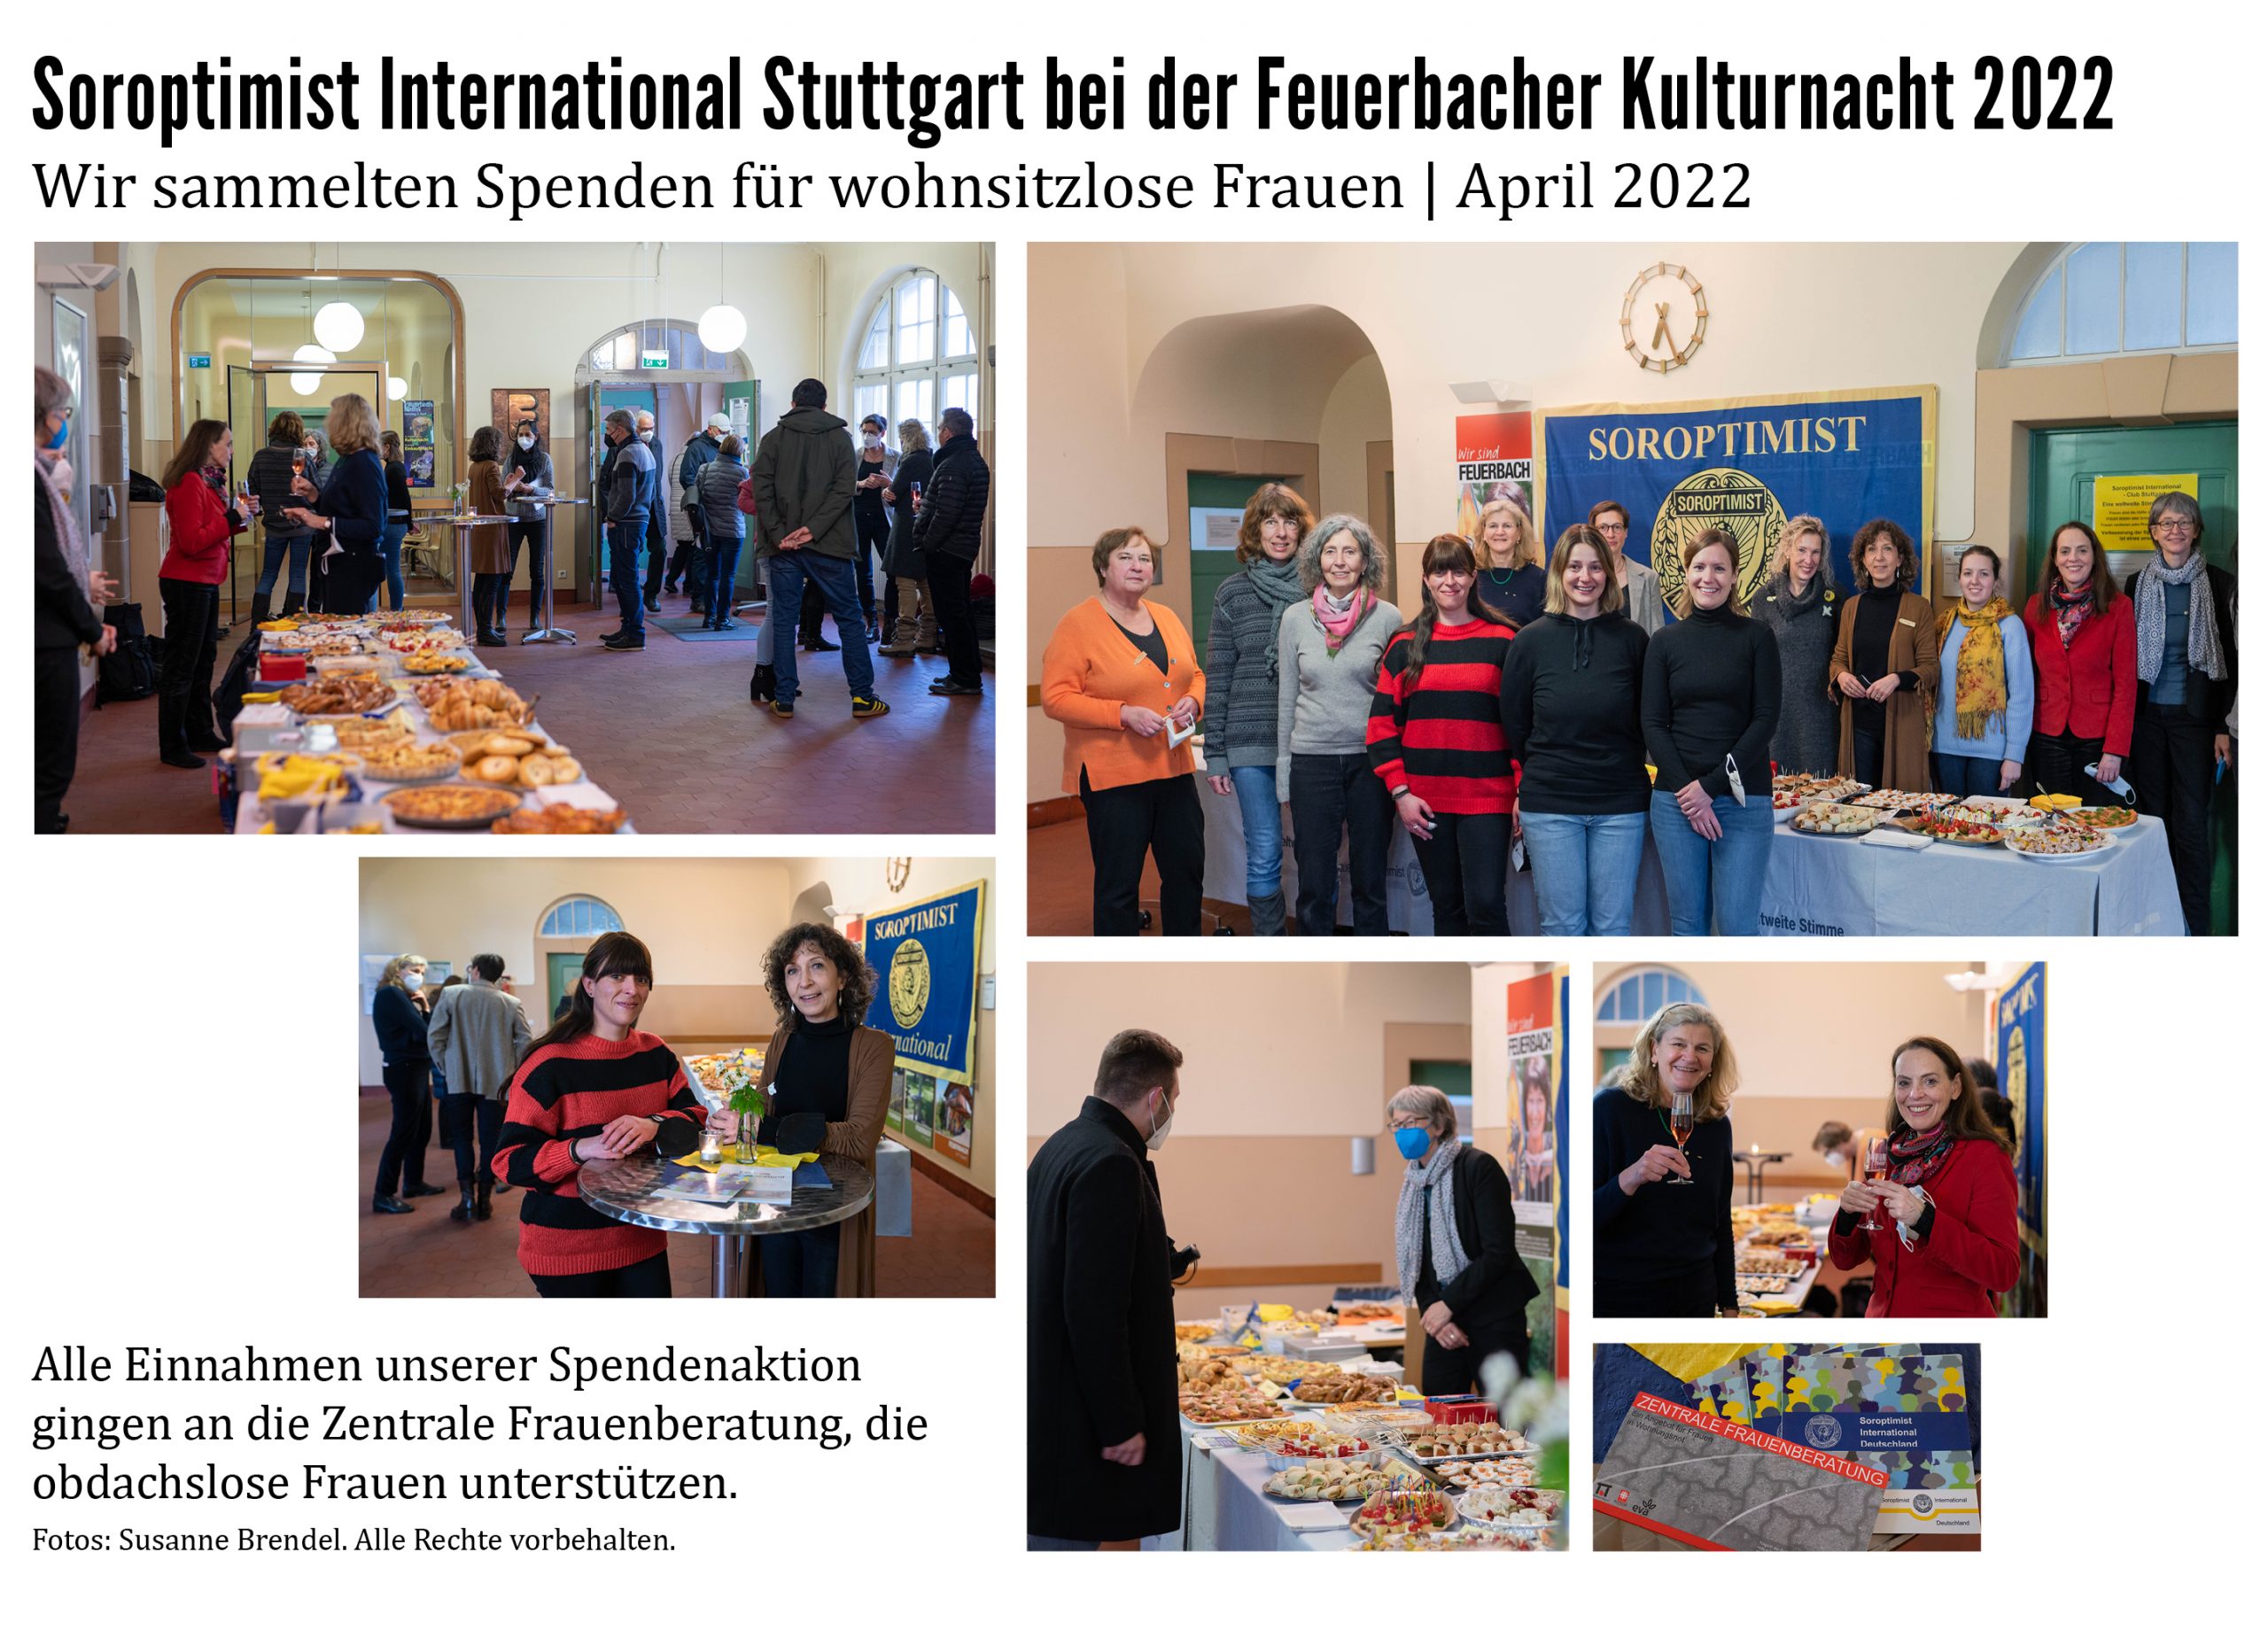 So sieht unser Clubleben auch aus. Soroptimist International Stuttgart bei der Feuerbacher Kulturnacht, Spendensammeln für wohnsitzlose Frauen mit Imbiss und Gesprächen. 